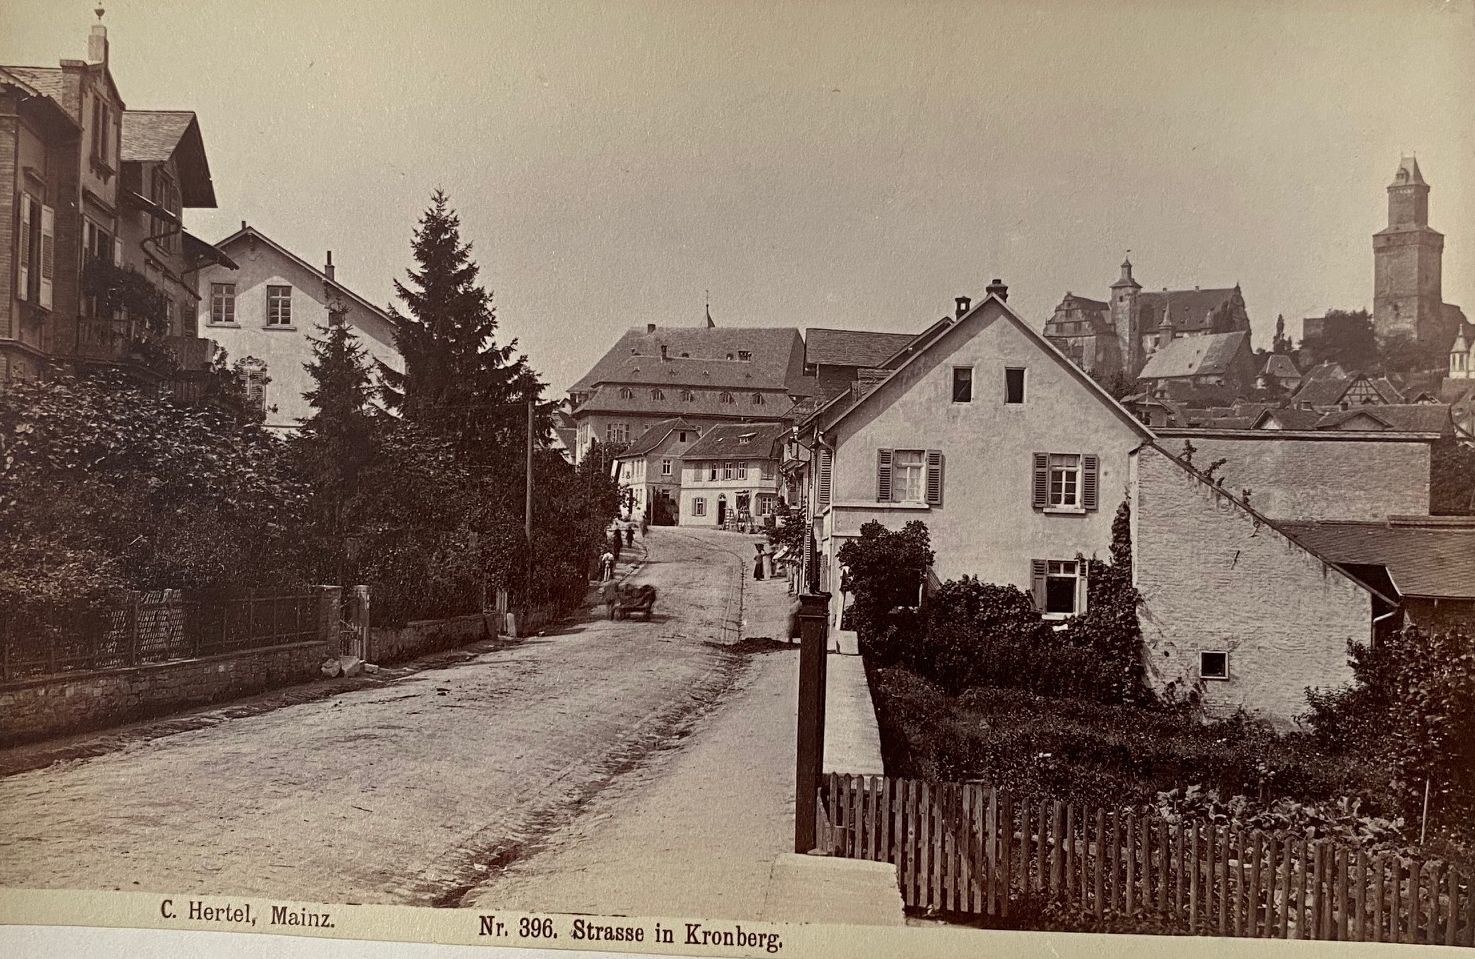 Fotografie, Carl Hertel No. 396, Strasse in Kronberg, ca. 1885 (Taunus-Rhein-Main - Regionalgeschichtliche Sammlung Dr. Stefan Naas CC BY-NC-SA)